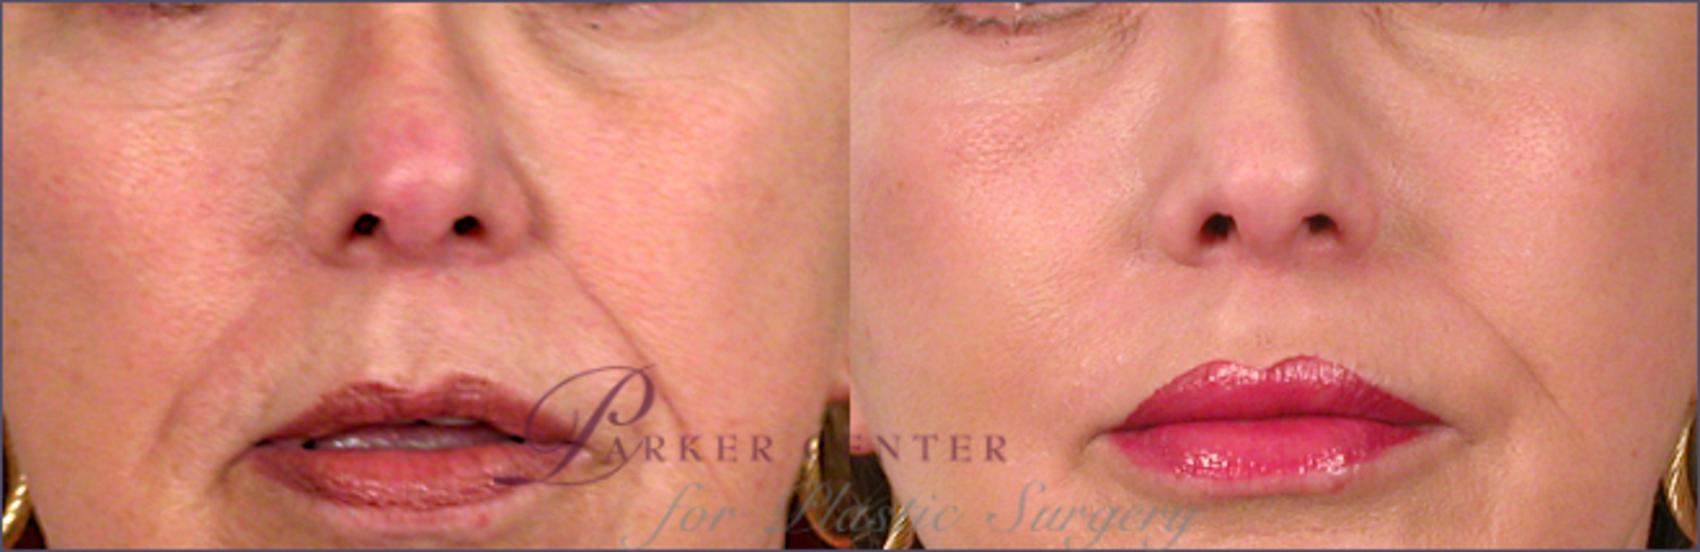 Lip Enhancement Case 258 Before & After View #1 | Paramus, NJ | Parker Center for Plastic Surgery